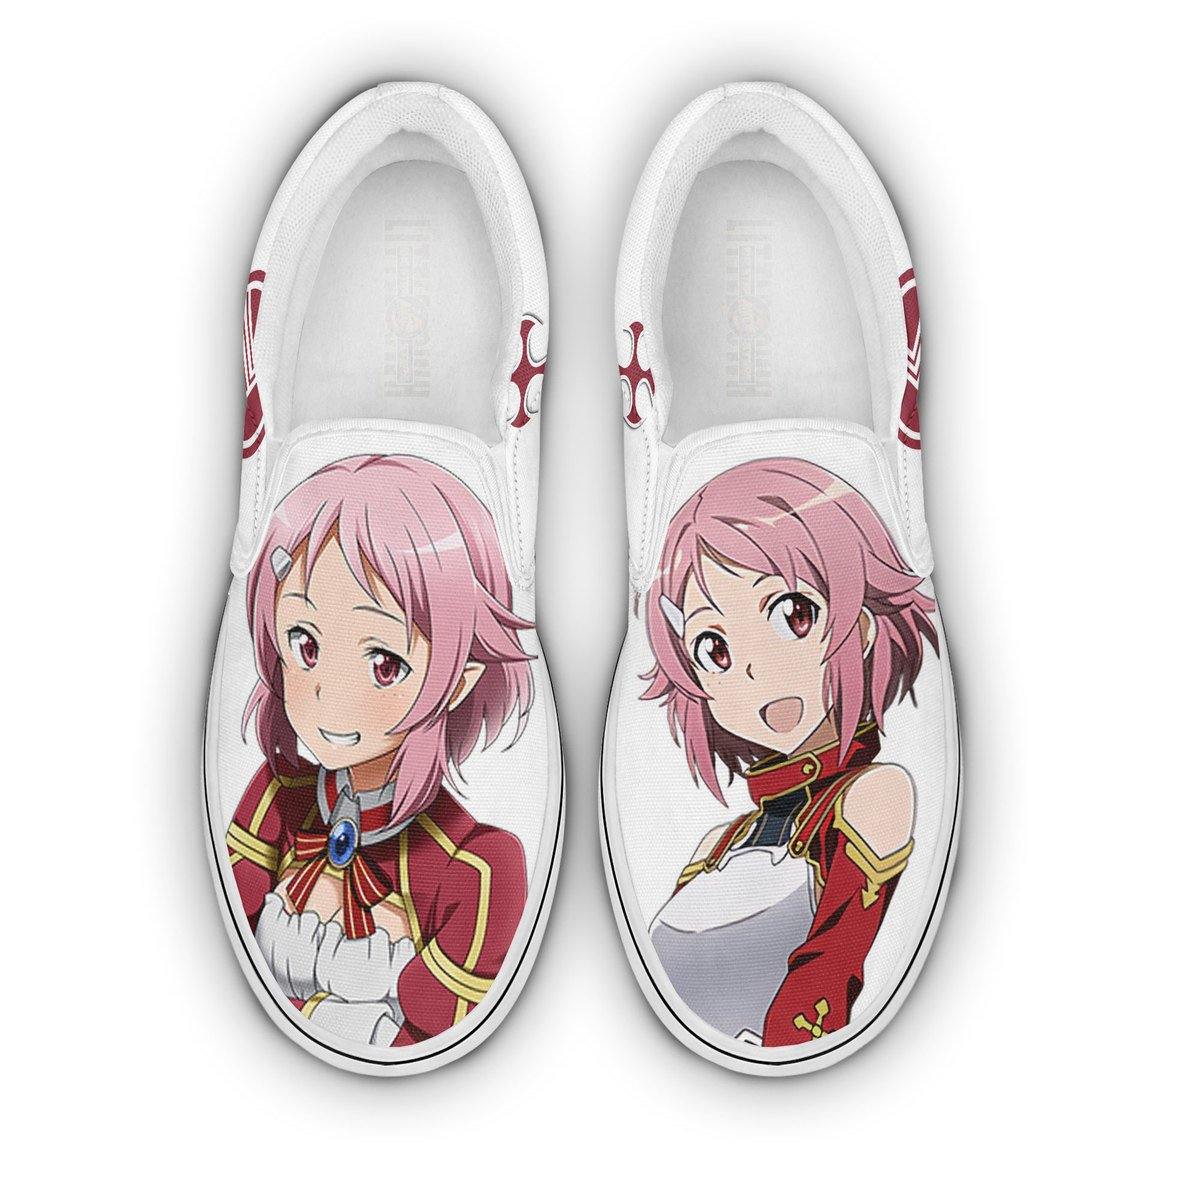 Sword Art Online Lisbeth Shoes Custom Anime Classic Slip-On Sneakers